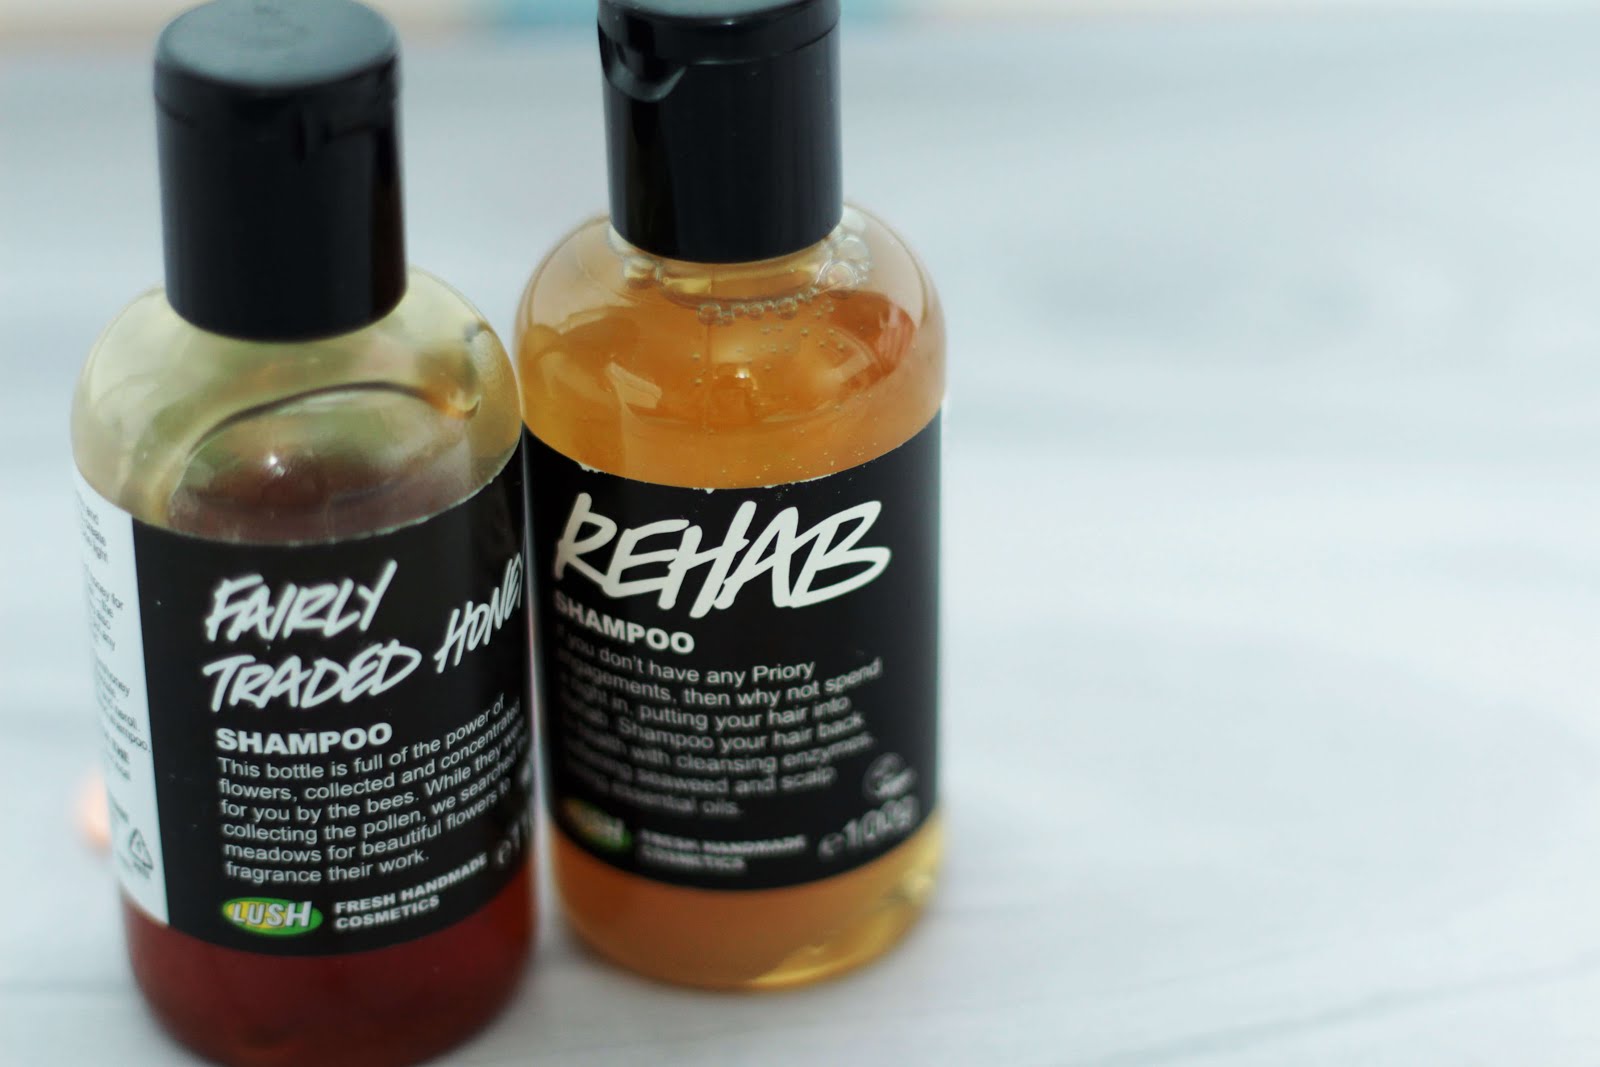 Lush rehab and fairly traded honey shampoo review